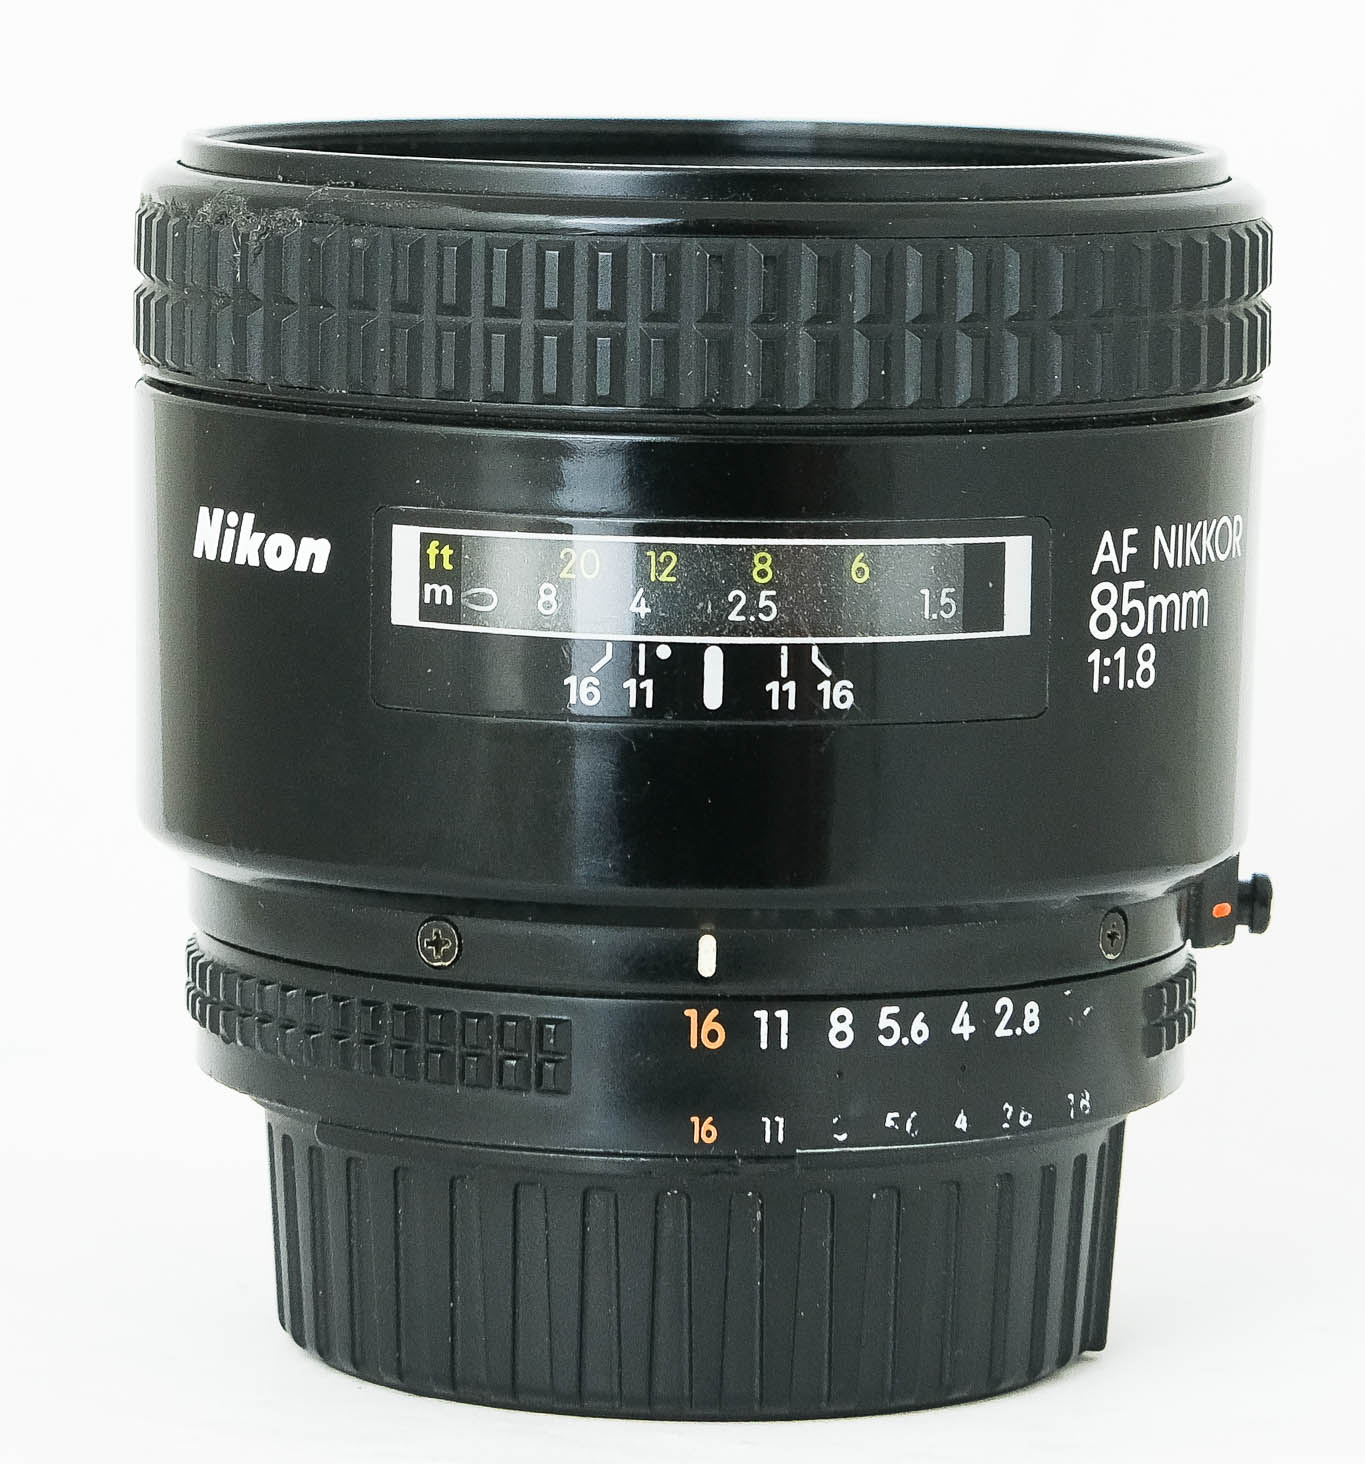 Nikon 85mm f1.8 AF Nikkor - The Classic Camera